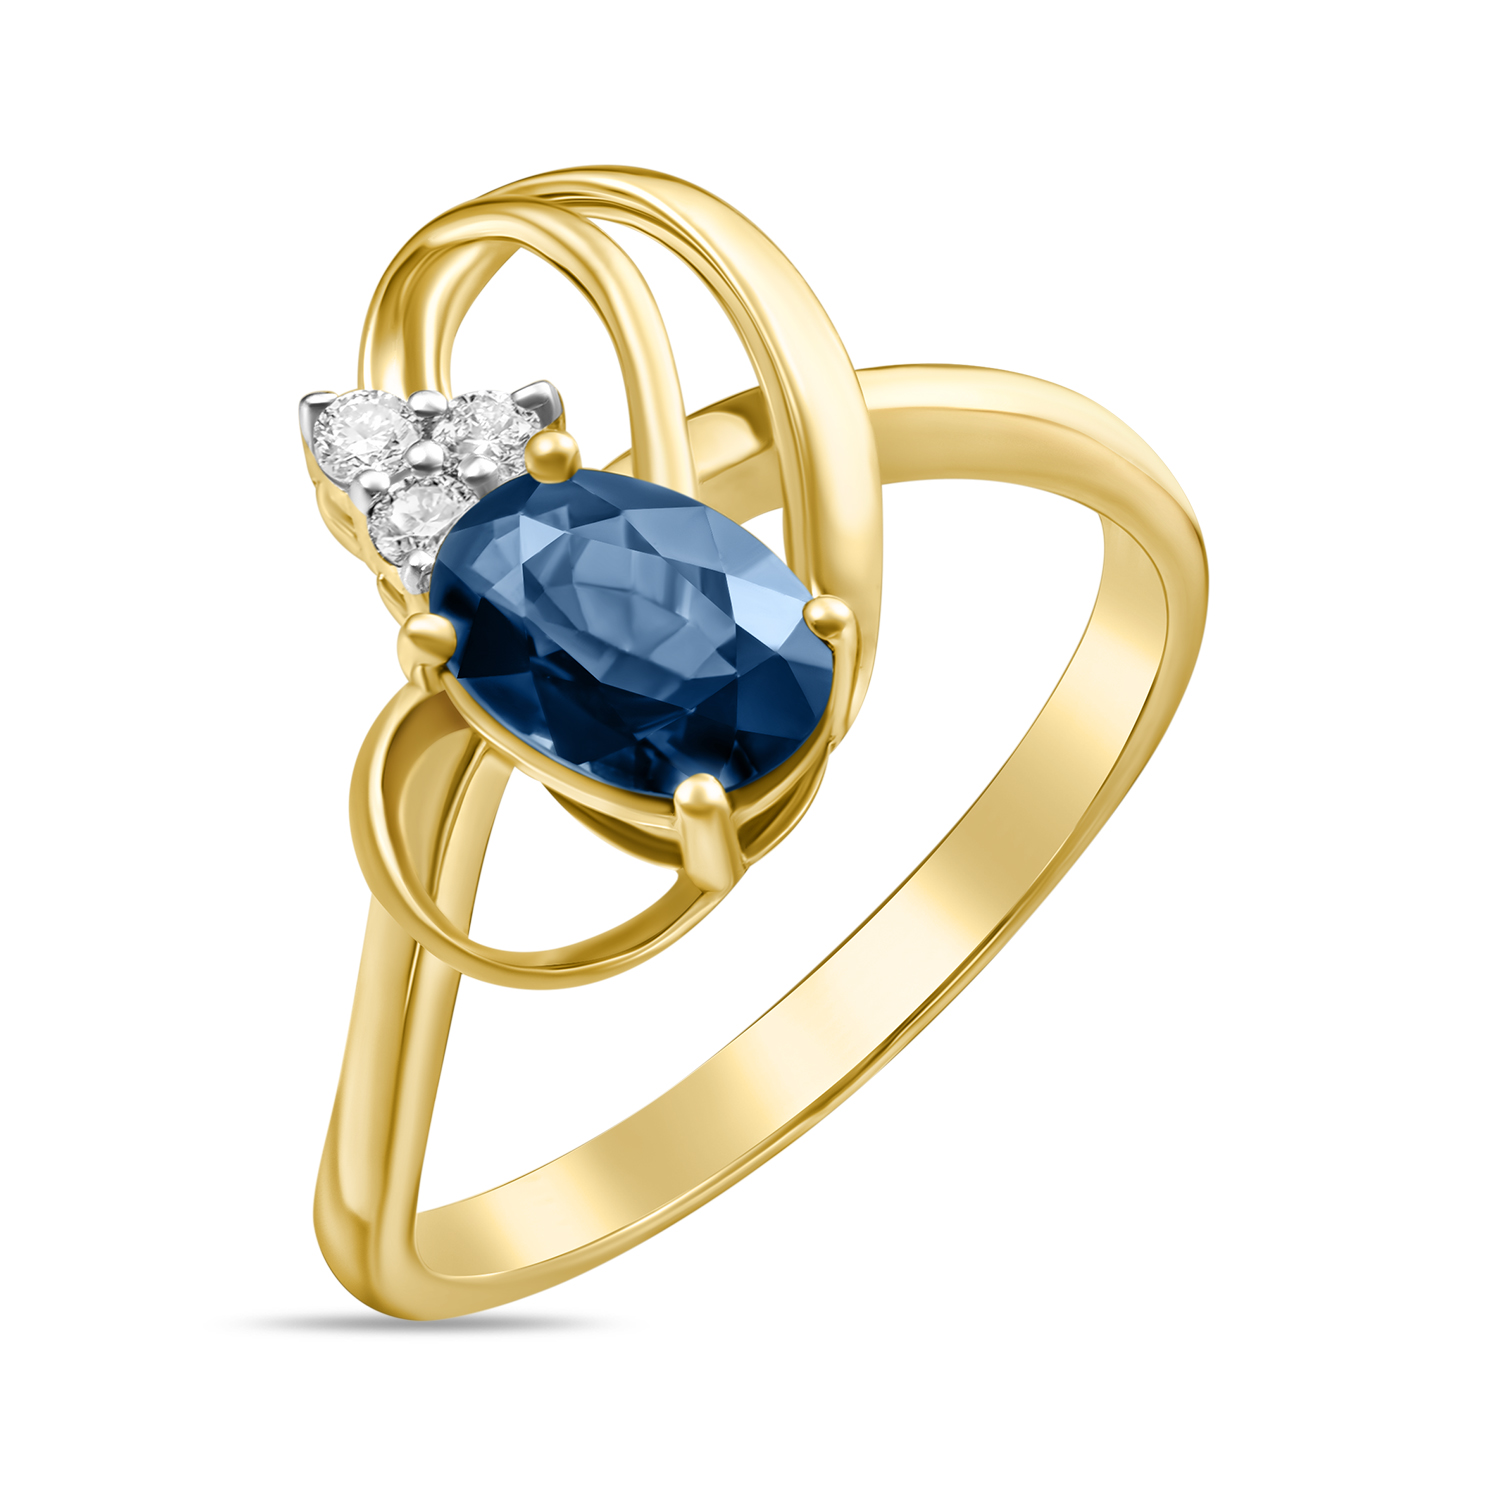 Кольца МЮЗ Золотое кольцо с бриллиантами и сапфиром miuz ru золотое кольцо c бриллиантами и сапфиром